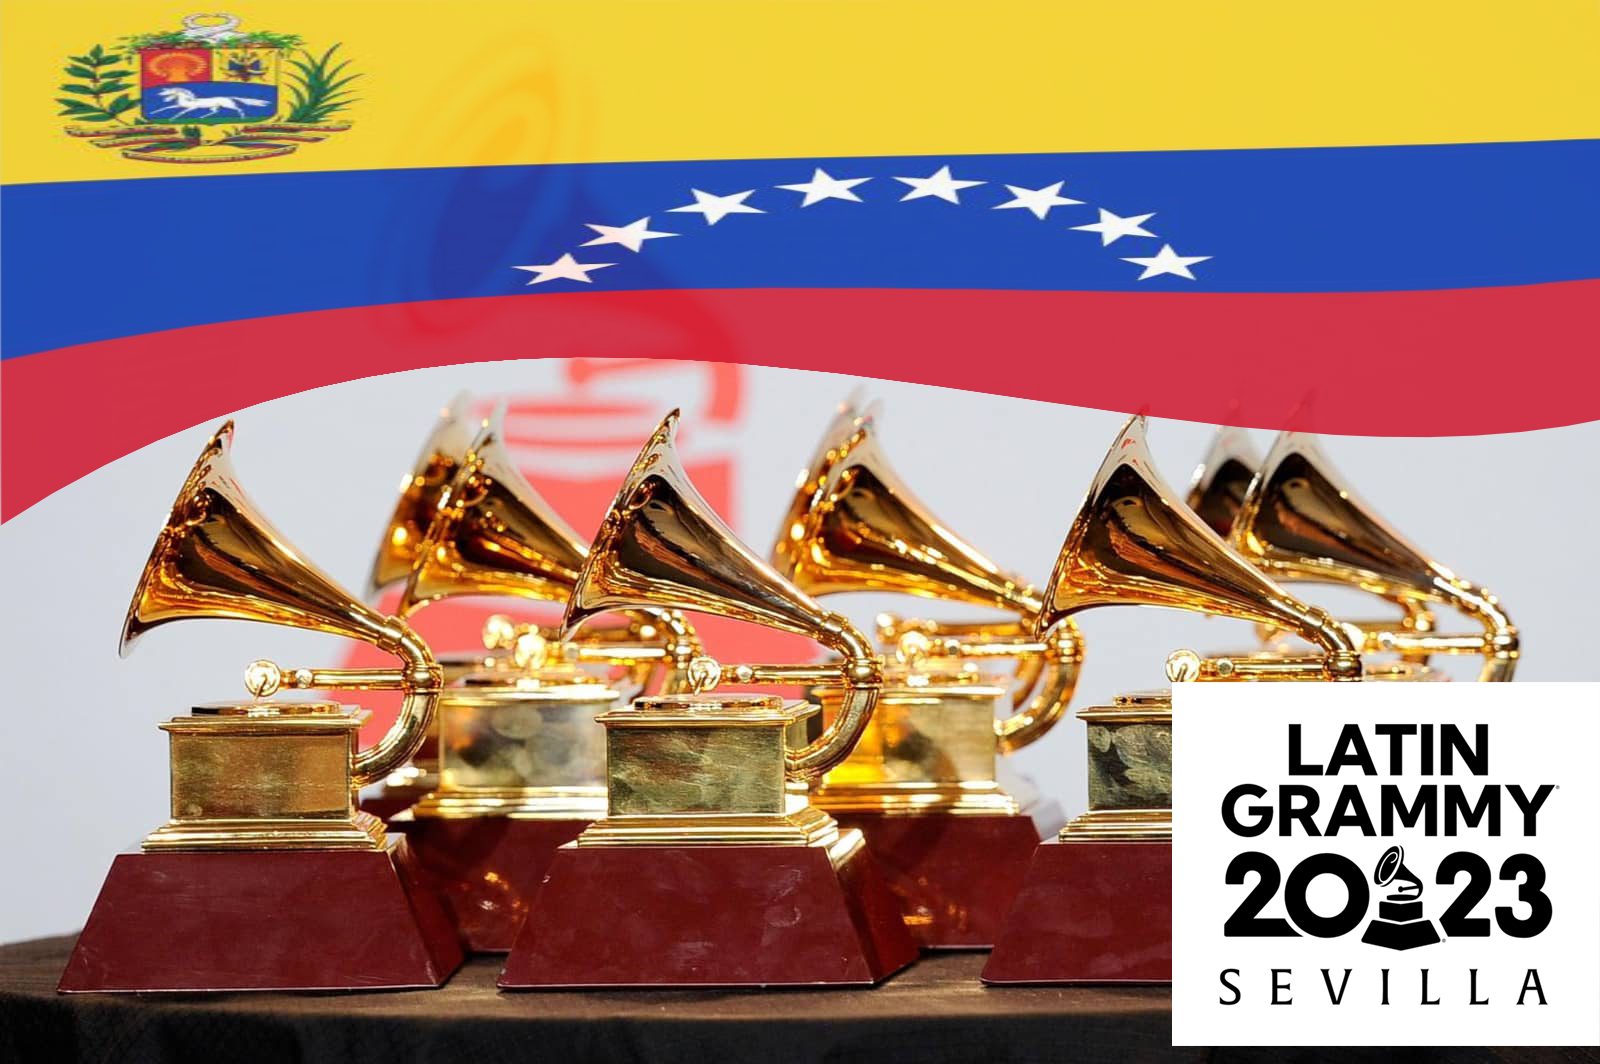 Dos venezolanos nominados a los Latin Grammy 2023. ¡Mira de quiénes se tratan!